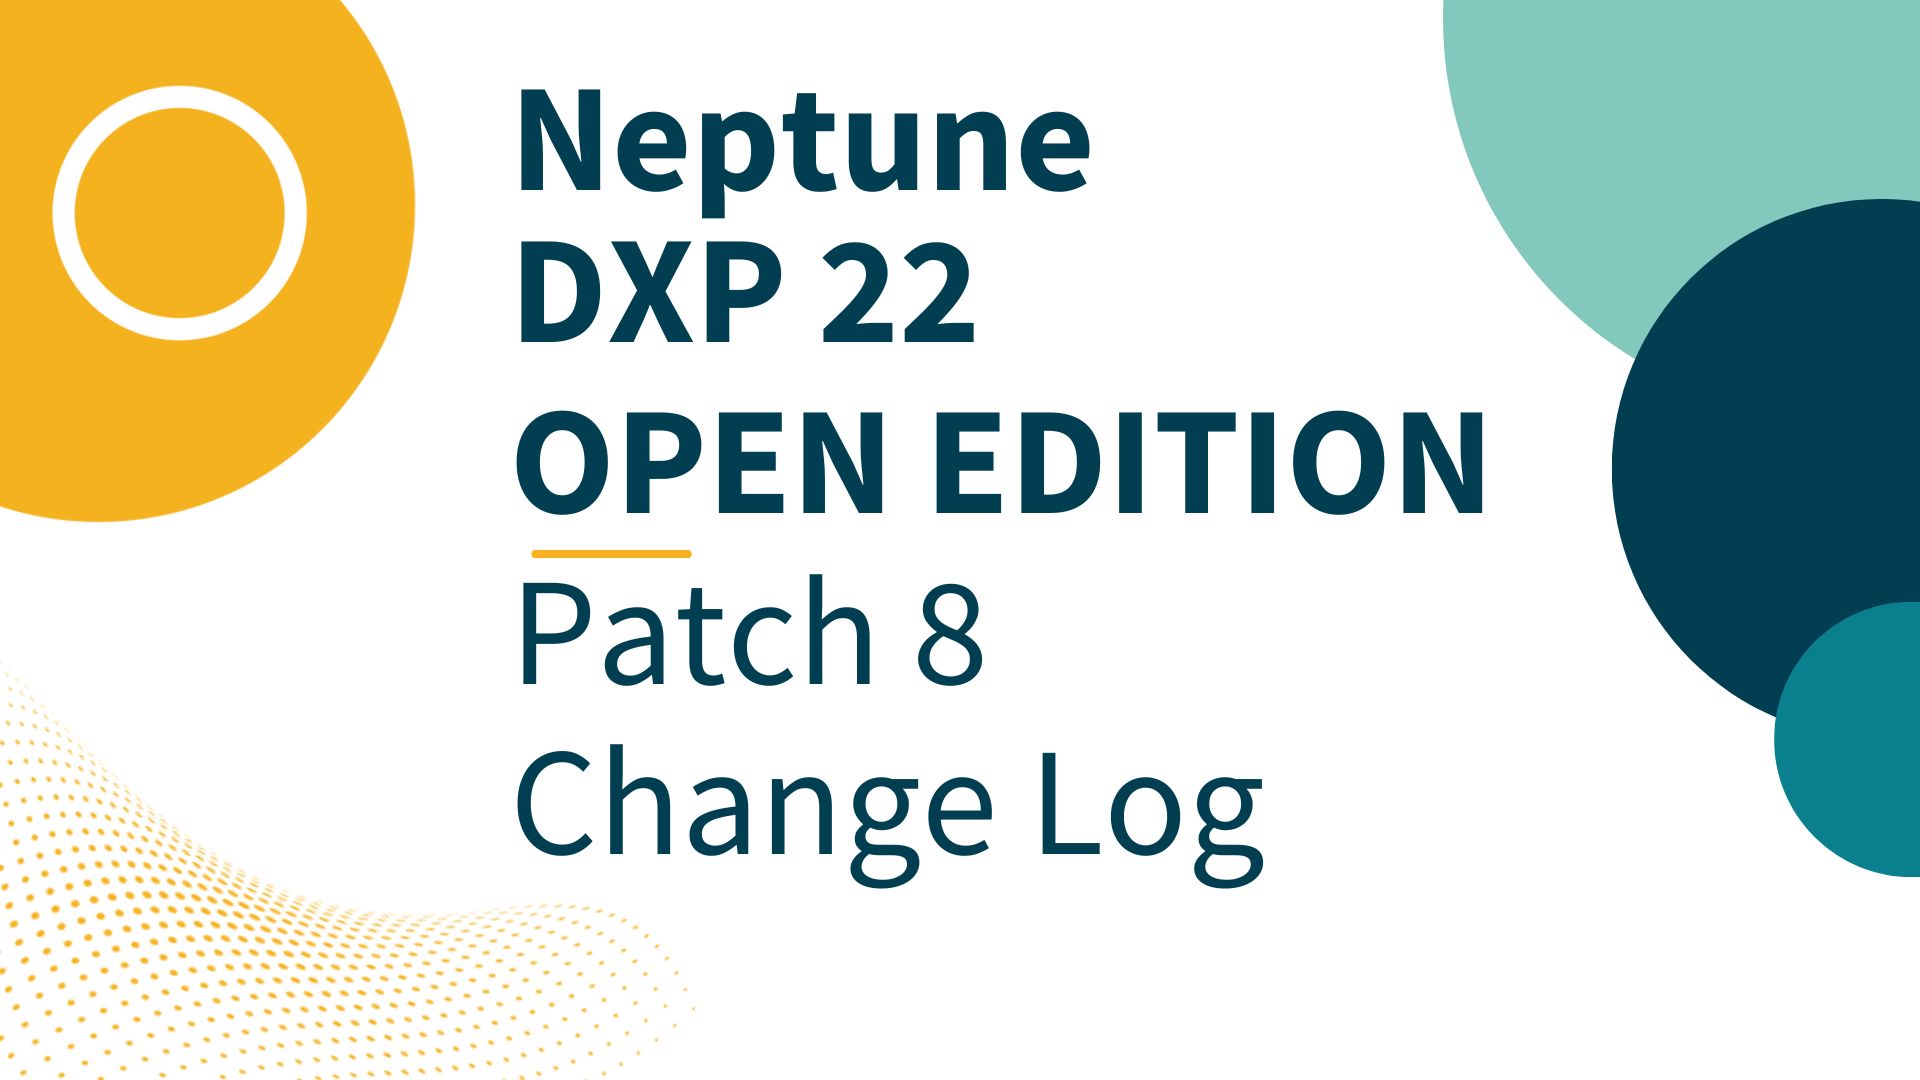 dxp22 10 8 patchimage